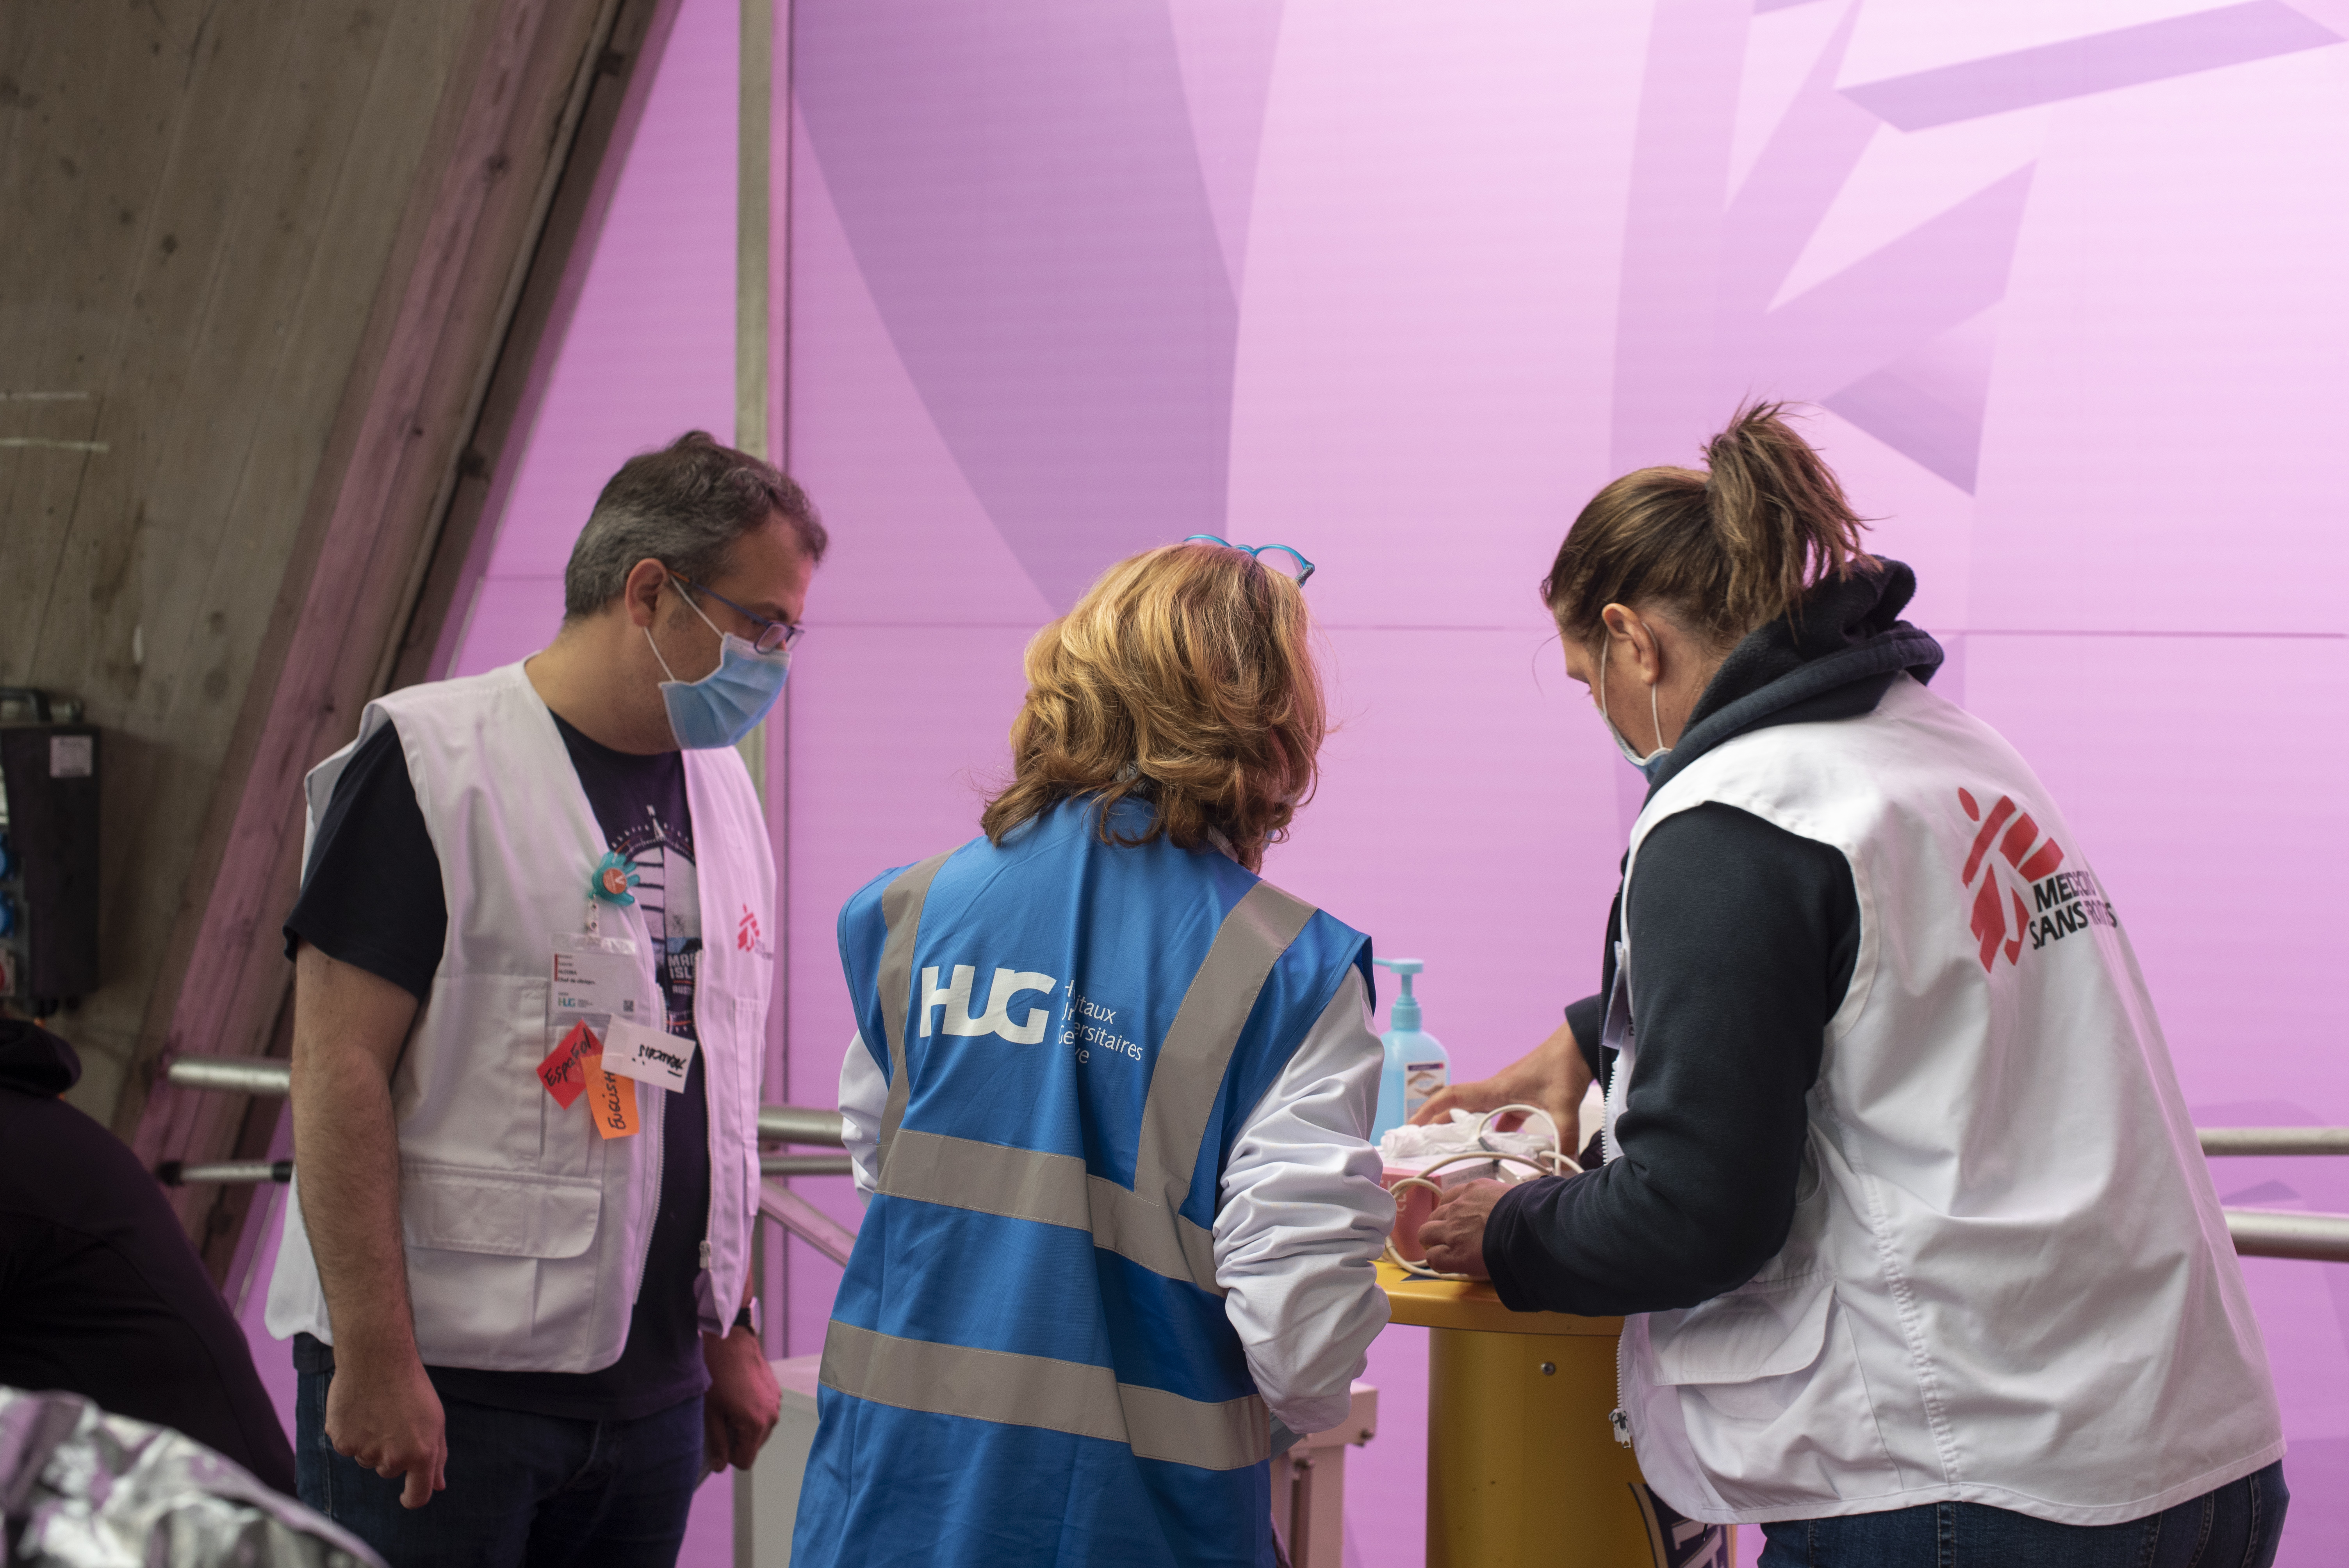 HUG - MSF COVID-19 et précarité à Genève : la précarité accroît l’exposition au virus et inquiète les personnes défavorisées